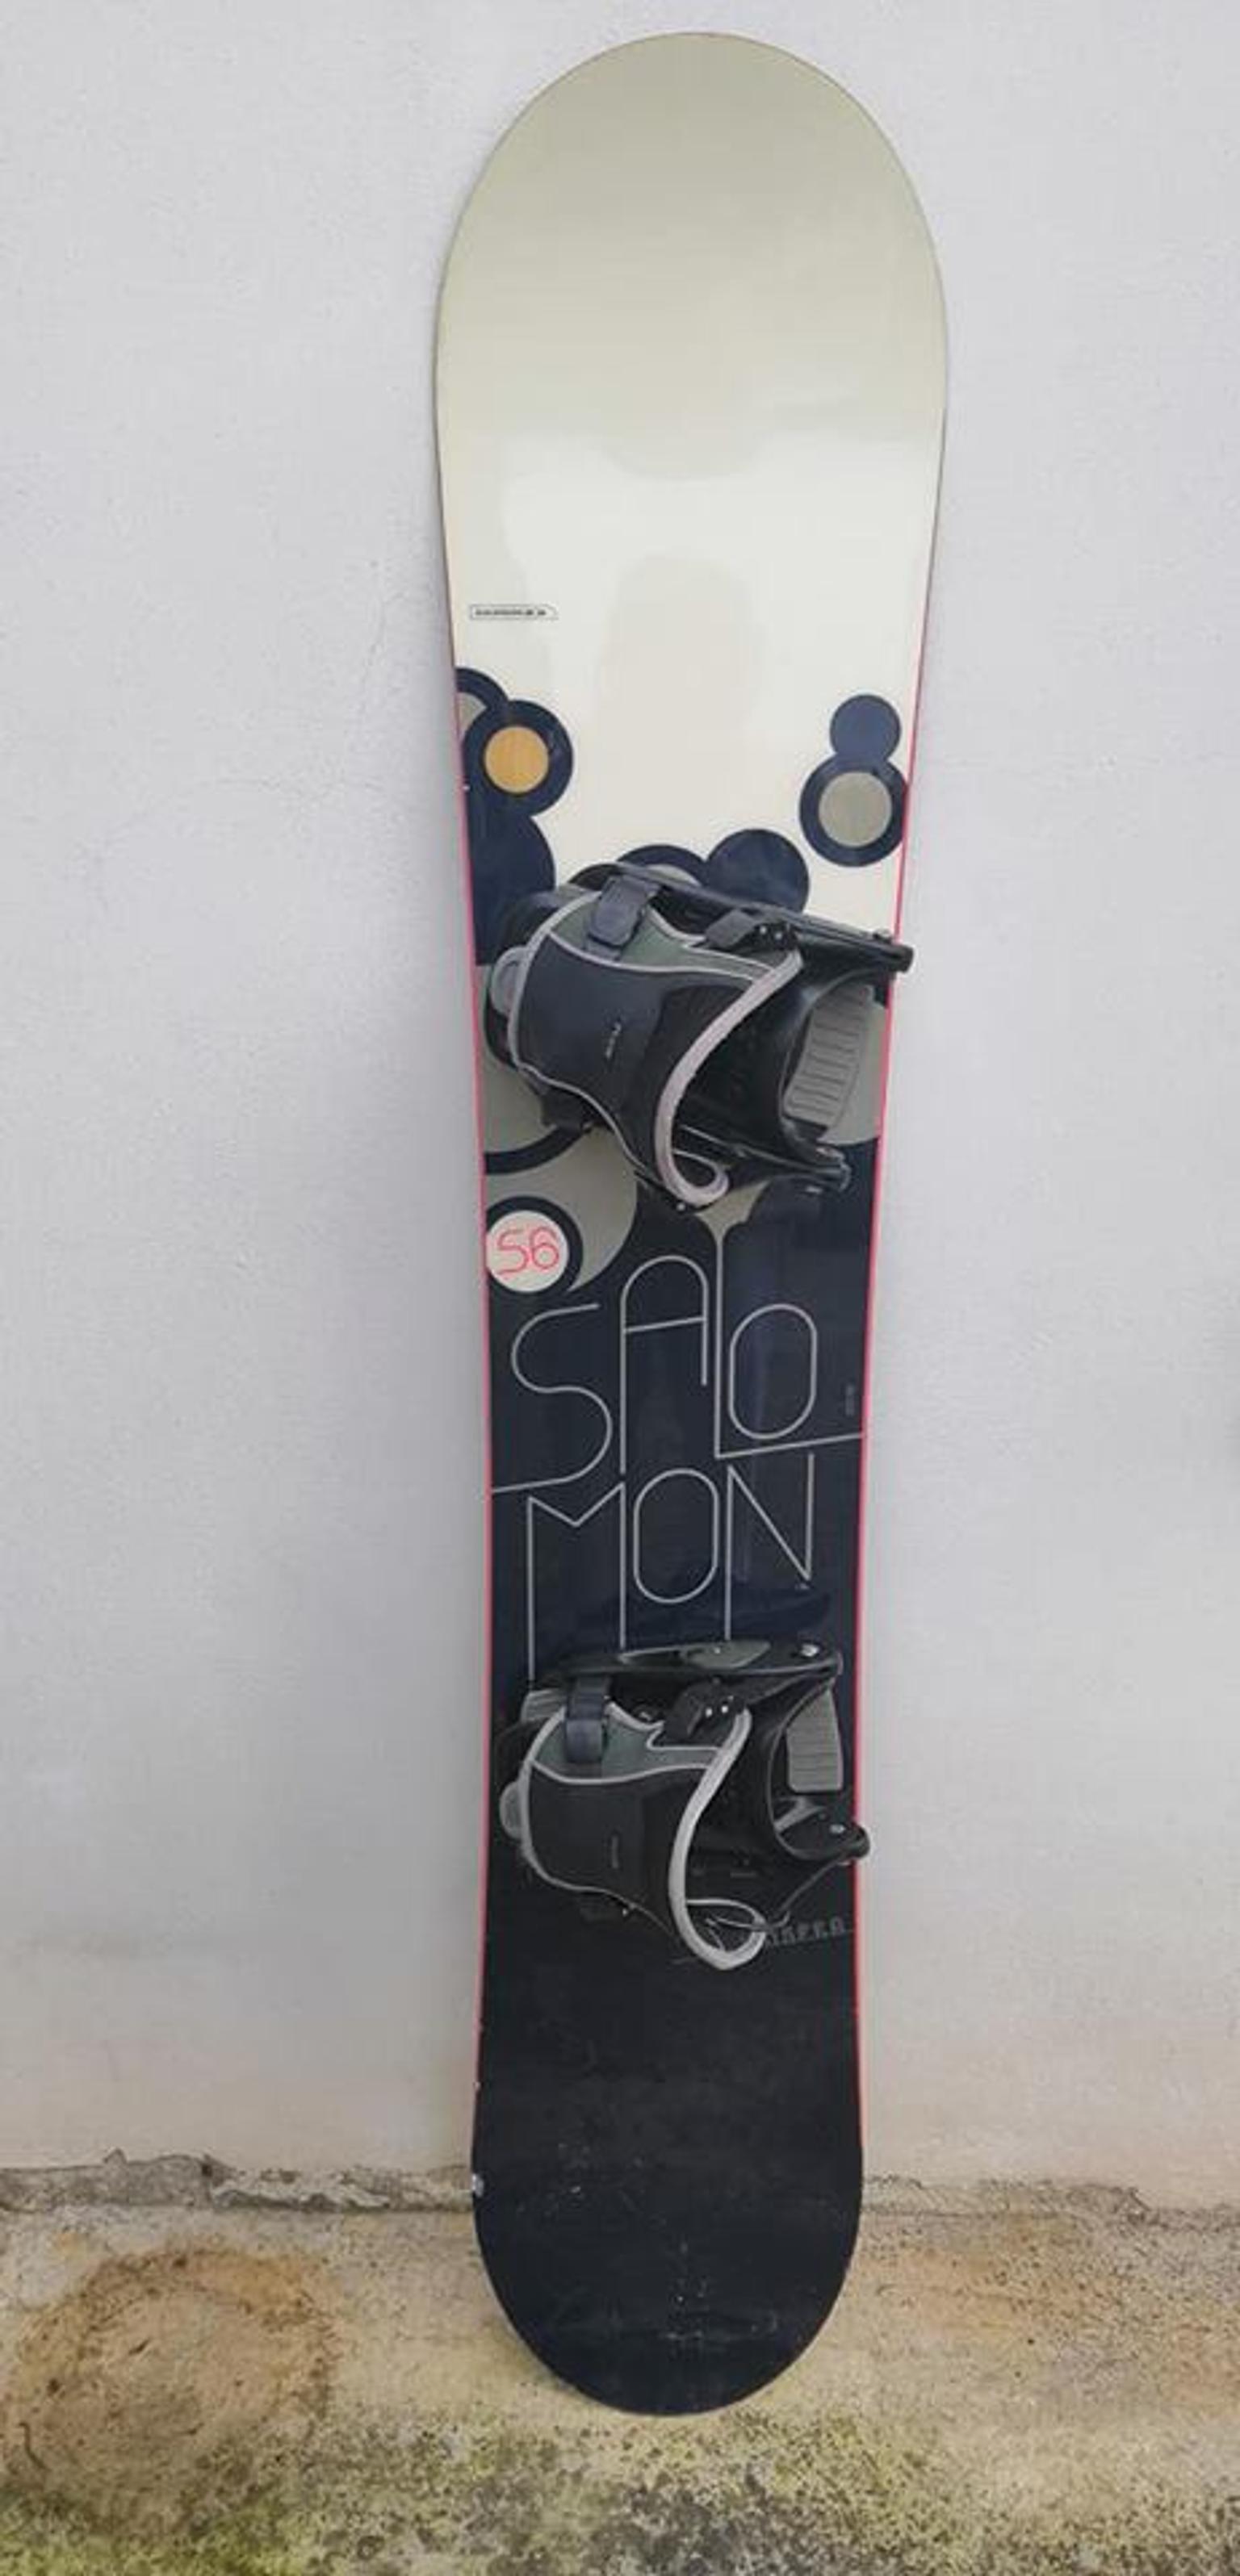 Tavola snowboard Salomon 157 cm in Solarolo Rainerio for €80.00 for